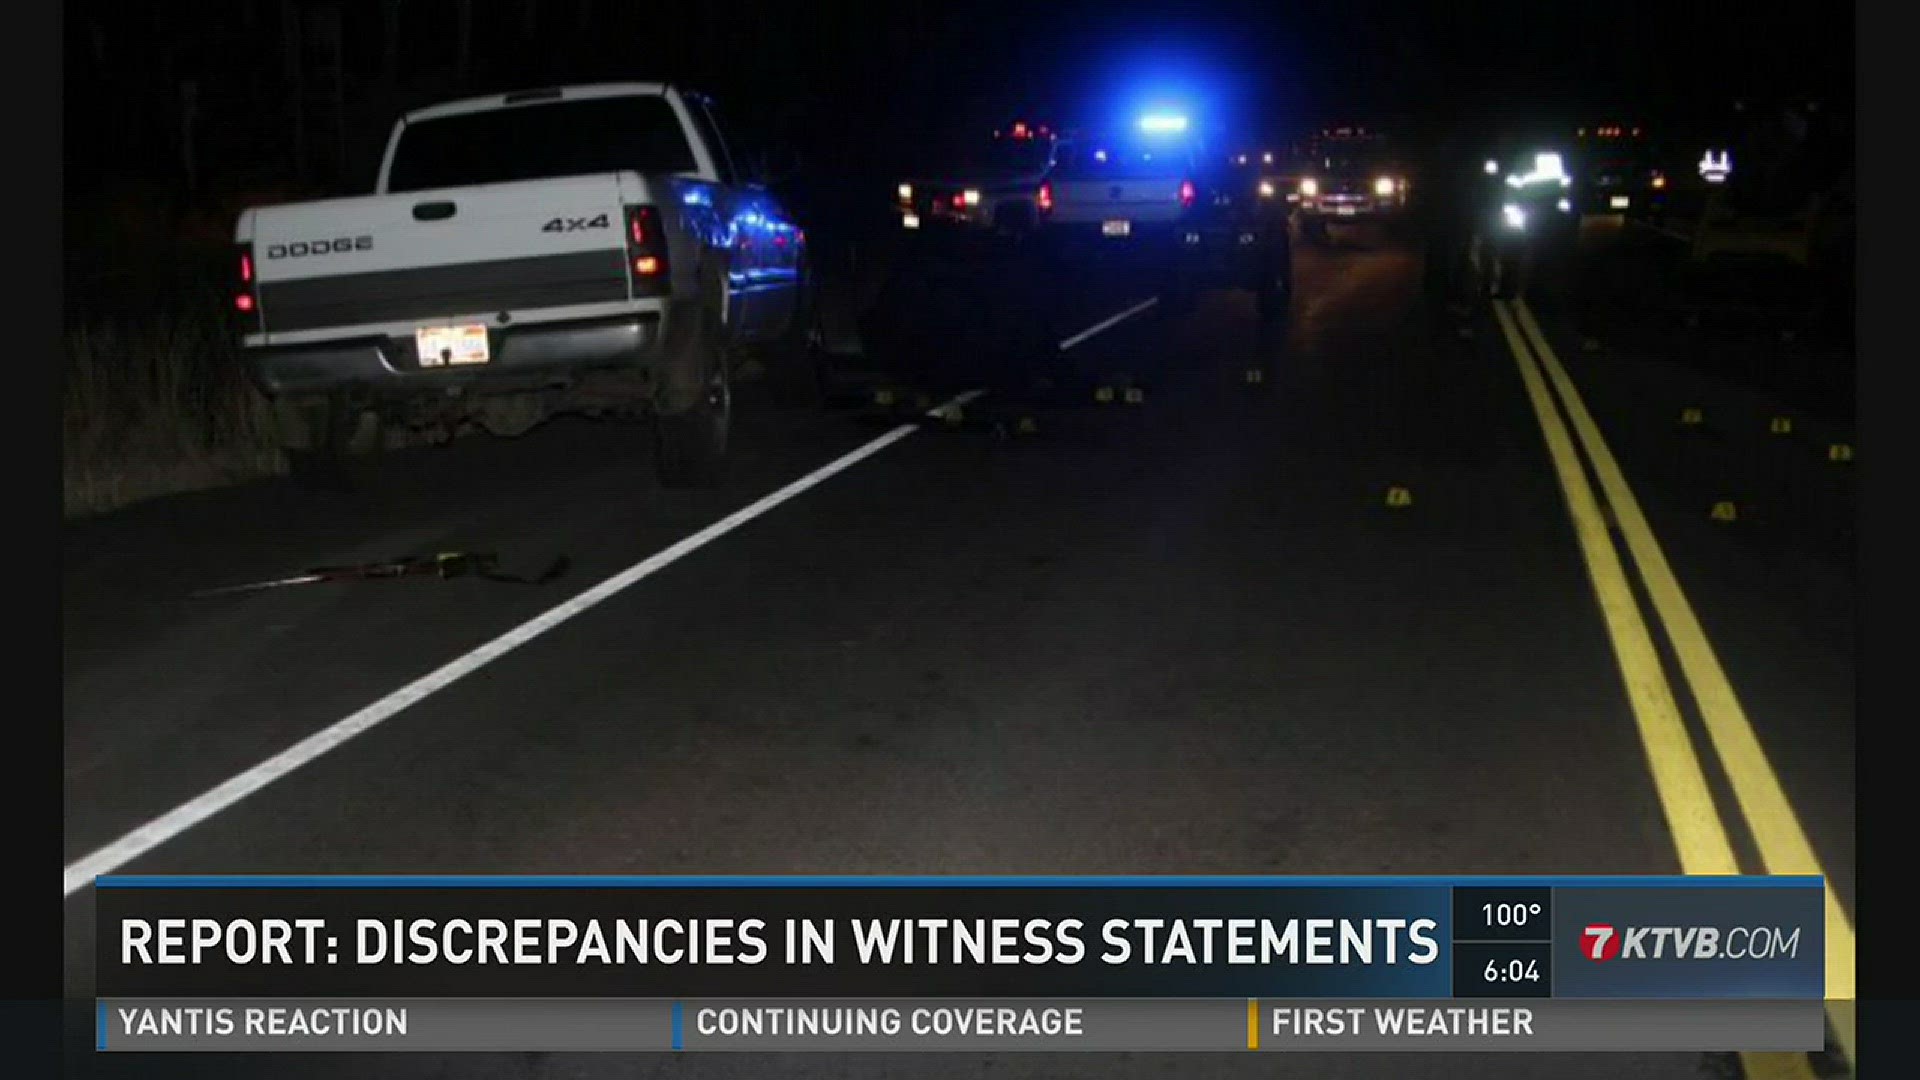 Report: Discrepancies in witness statements.